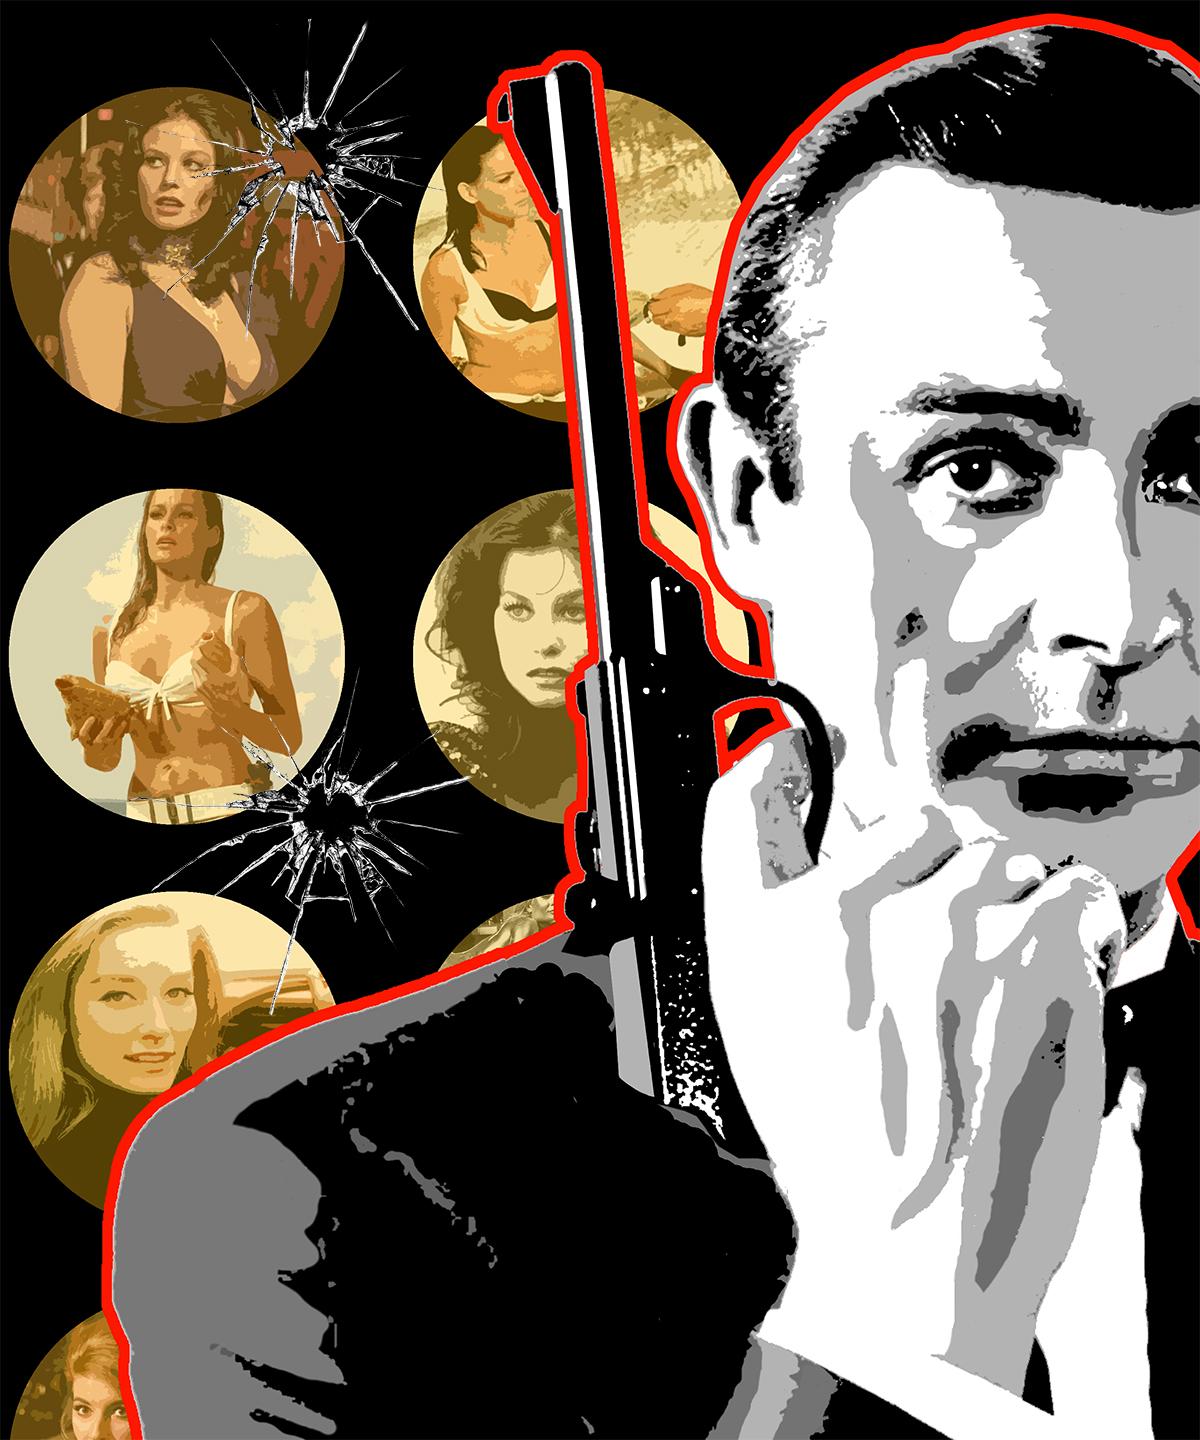 Signierter Monodruck 007 „Bond Girls Red and Golden“, 29x32“ auf Hadernpapier (Pop-Art), Mixed Media Art, von Ceravolo